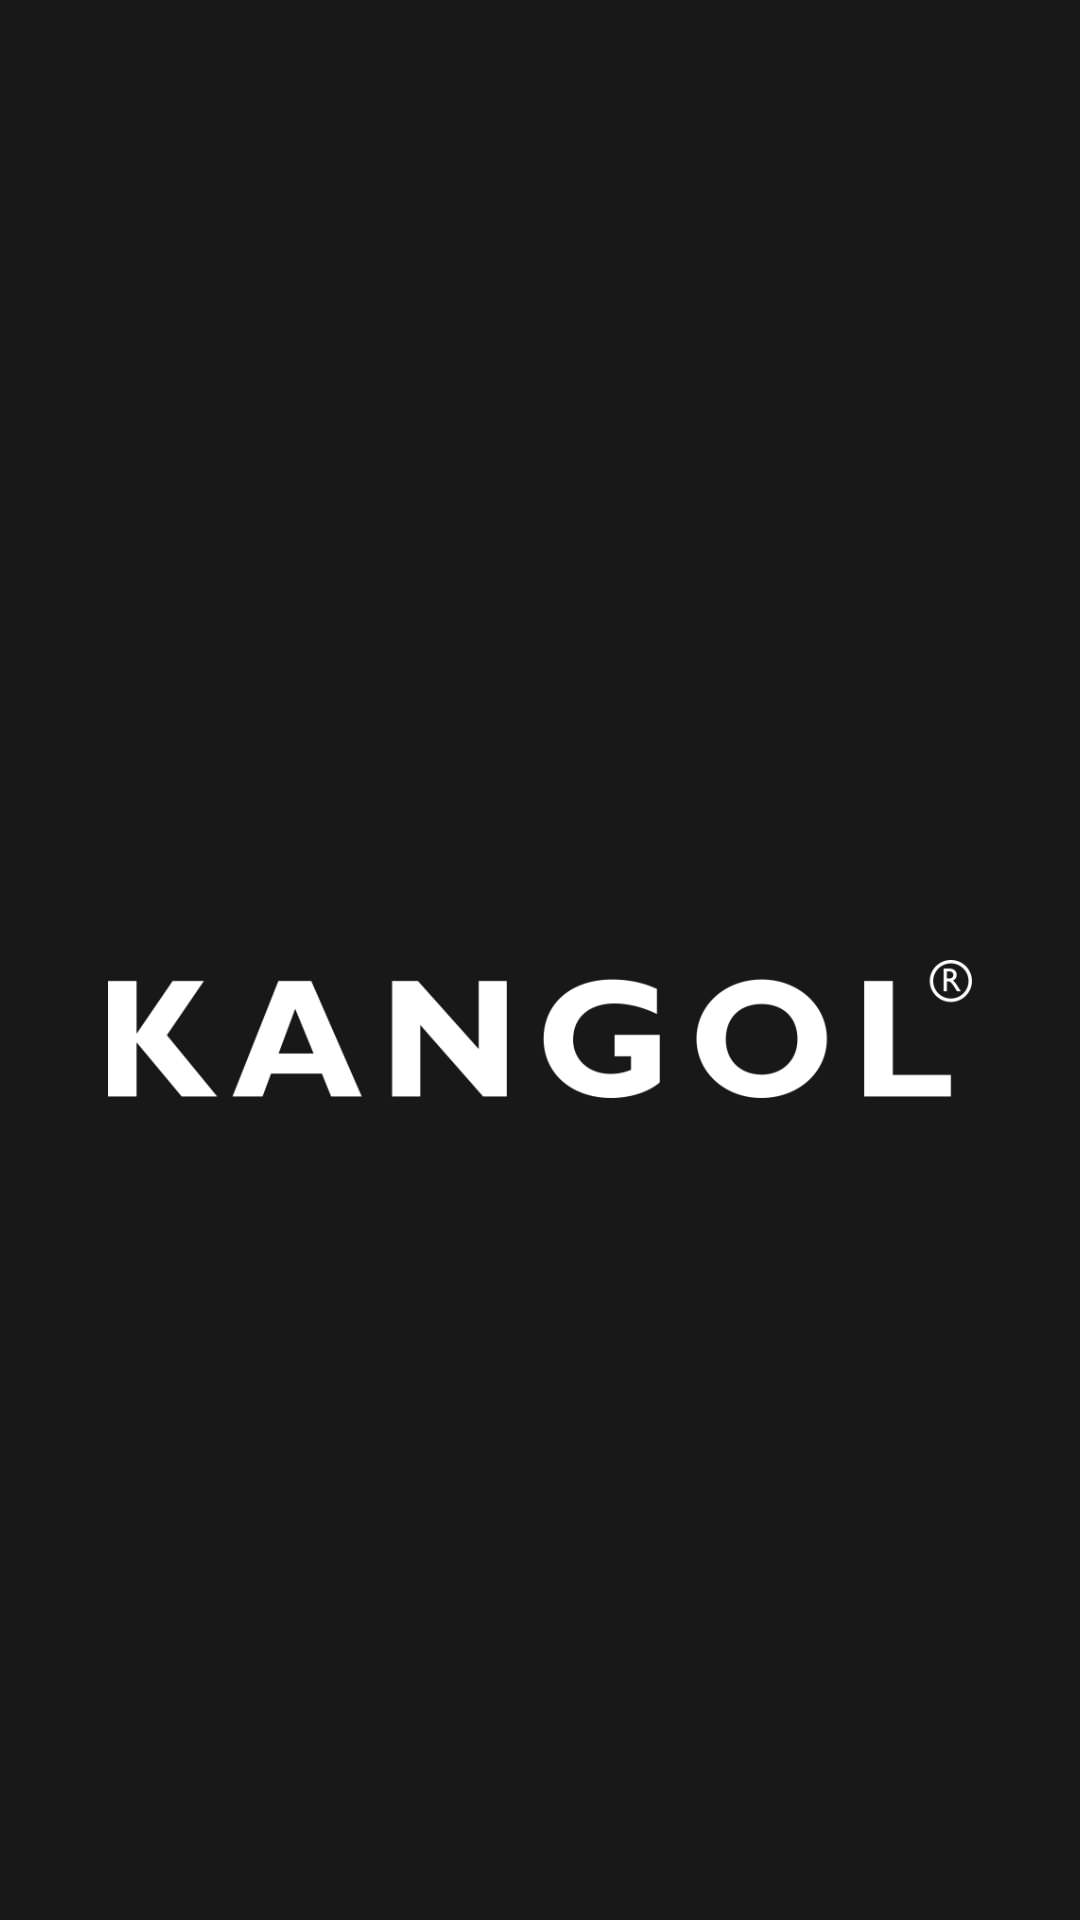 Kangol カンゴールのおしゃれな高画質スマホ壁紙32枚 エモい スマホ壁紙辞典